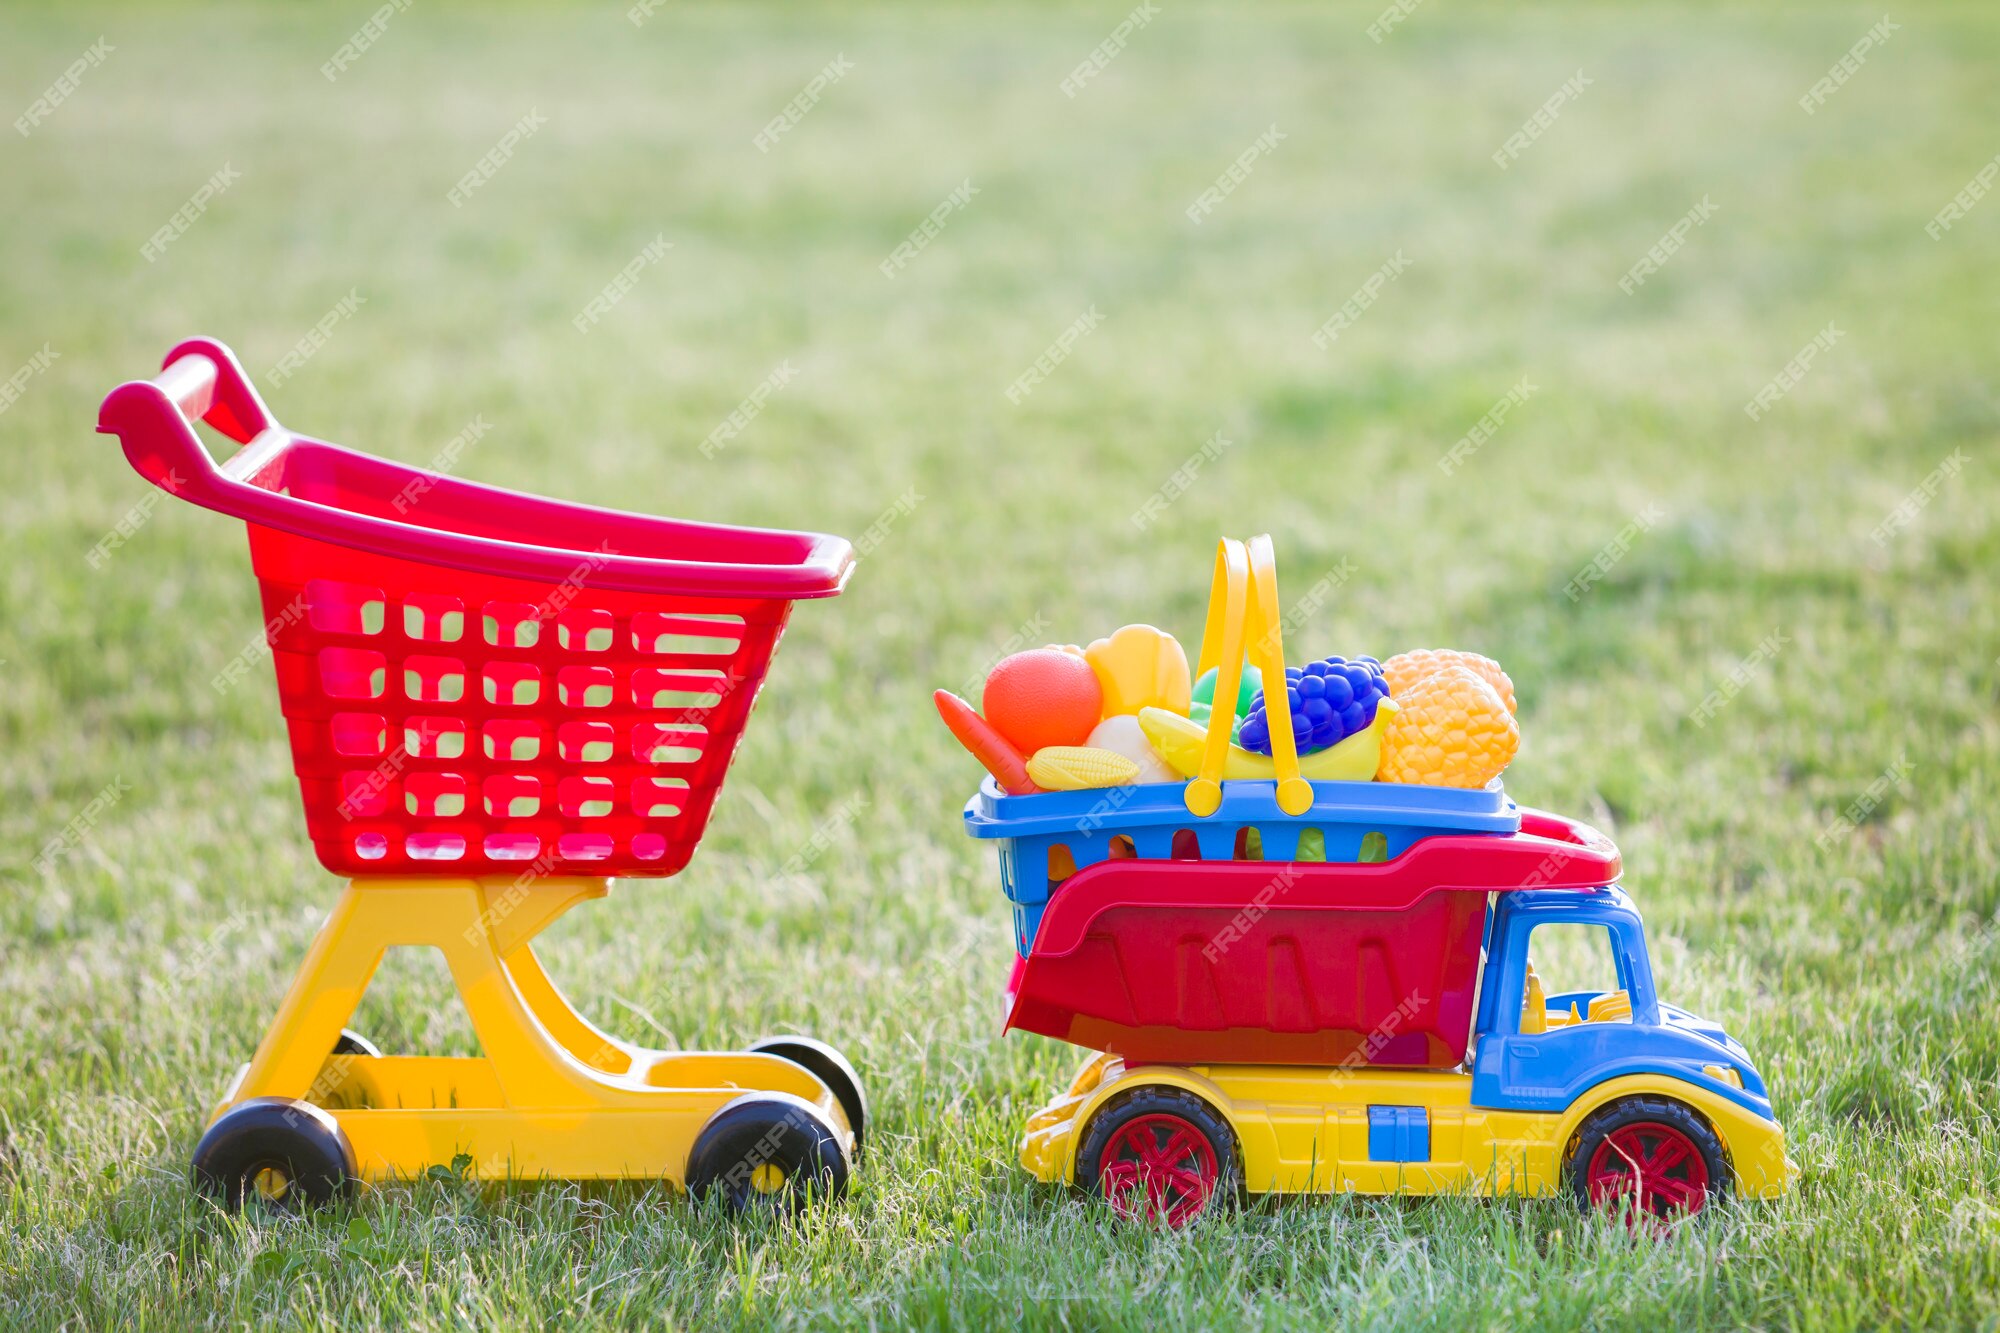 Draak Boren Passief Heldere plastic kleurrijke speelgoed voor kinderen buiten op zonnige  zomerdag. de vrachtwagen dragende mand van de auto met stuk speelgoed  groenten en fruit en het winkelen handkar. | Premium Foto